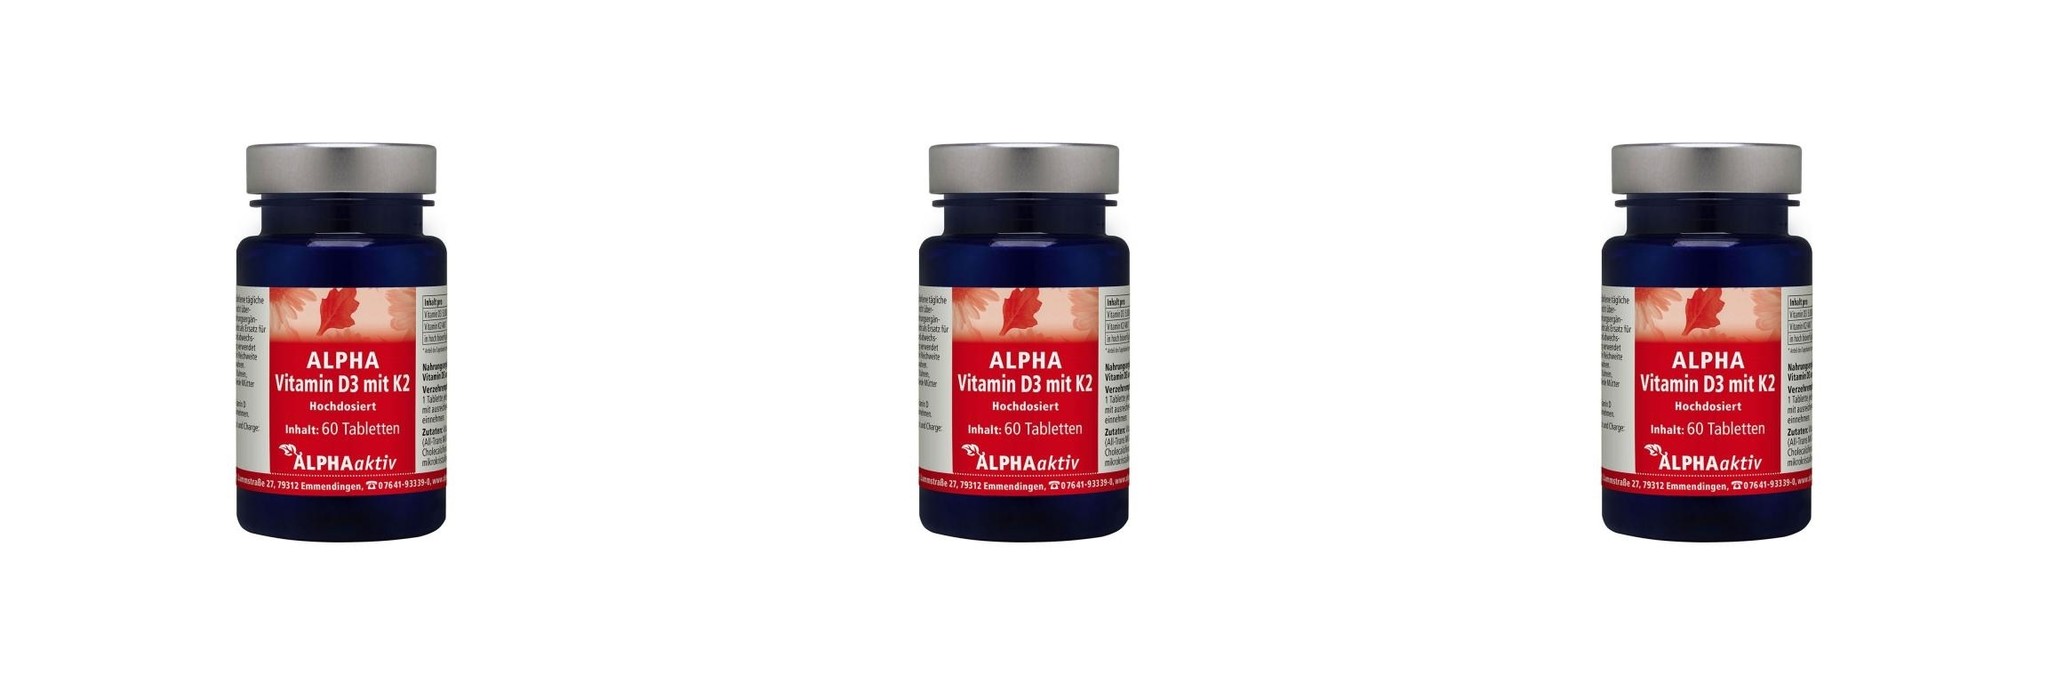 ALPHAaktiv ALPHA Vitamin D3+K2, 60 Tablets, 3-packs